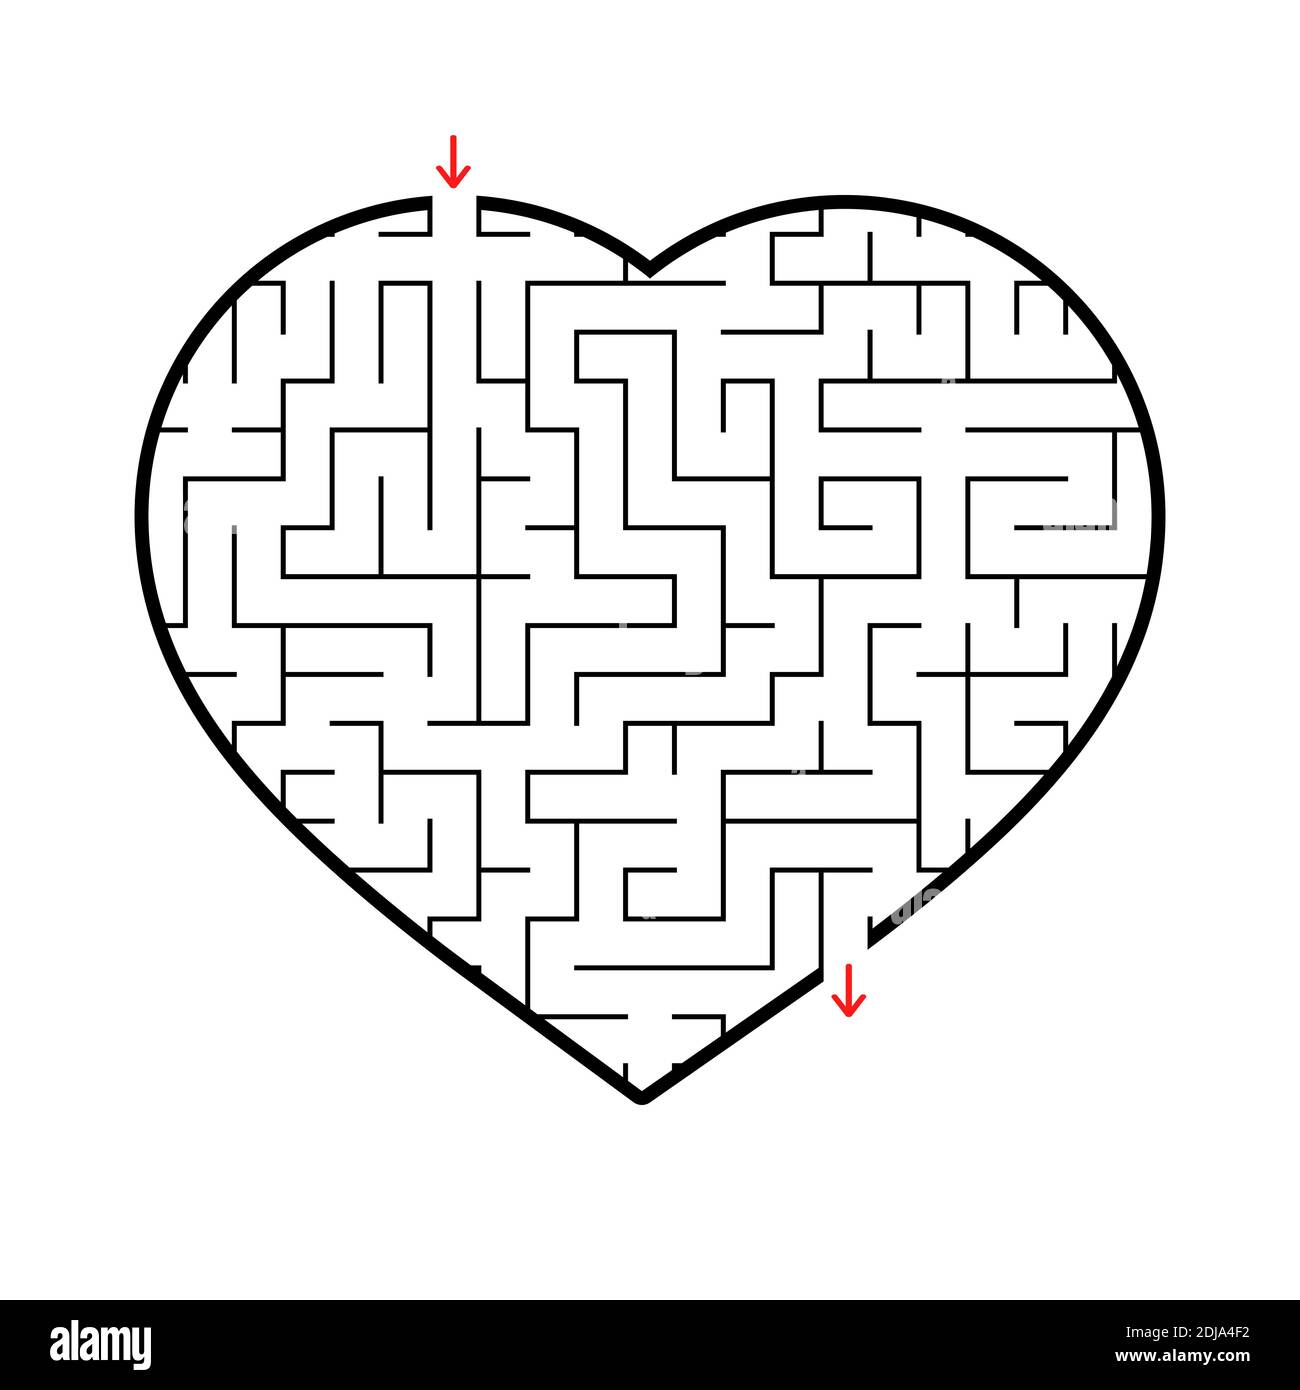 Cuore labirinto. Semplice immagine vettoriale piatta isolata su sfondo bianco. Un interessante gioco per bambini e adolescenti Illustrazione Vettoriale